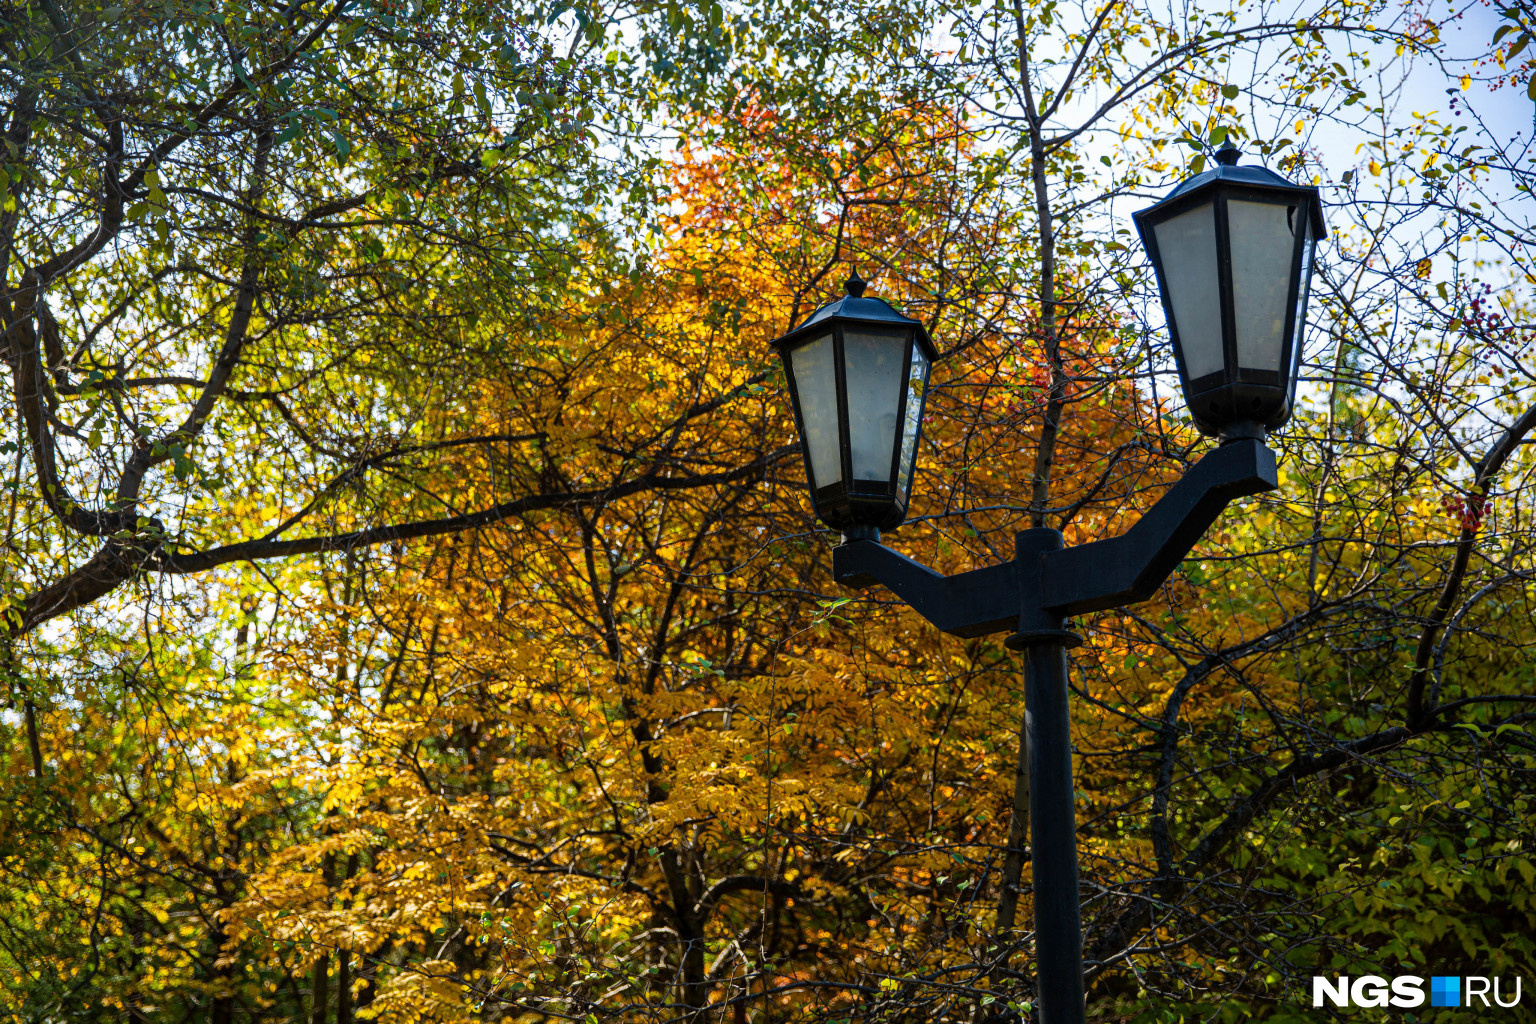 Уют в осенних парках создают фонари, причем даже днем. А уж вечером, когда они зажигаются, и подавно